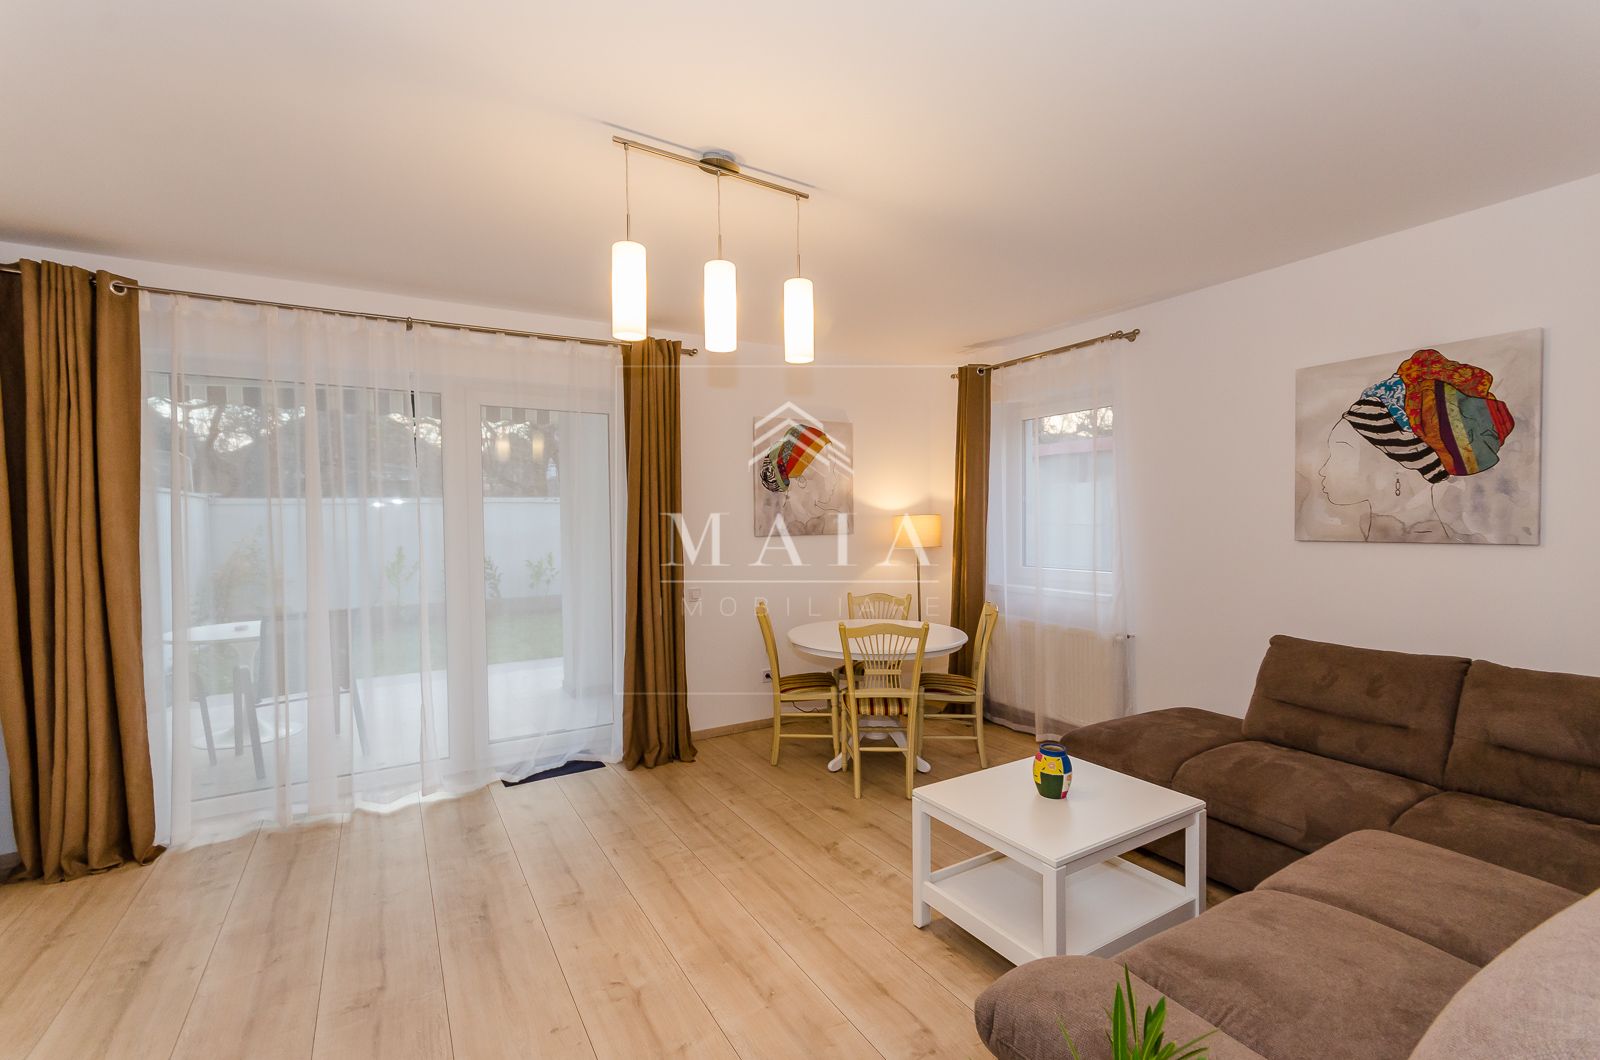 Apartament nou in zona Parcului Sub Arini,cu gradina de 90 mp si parcare